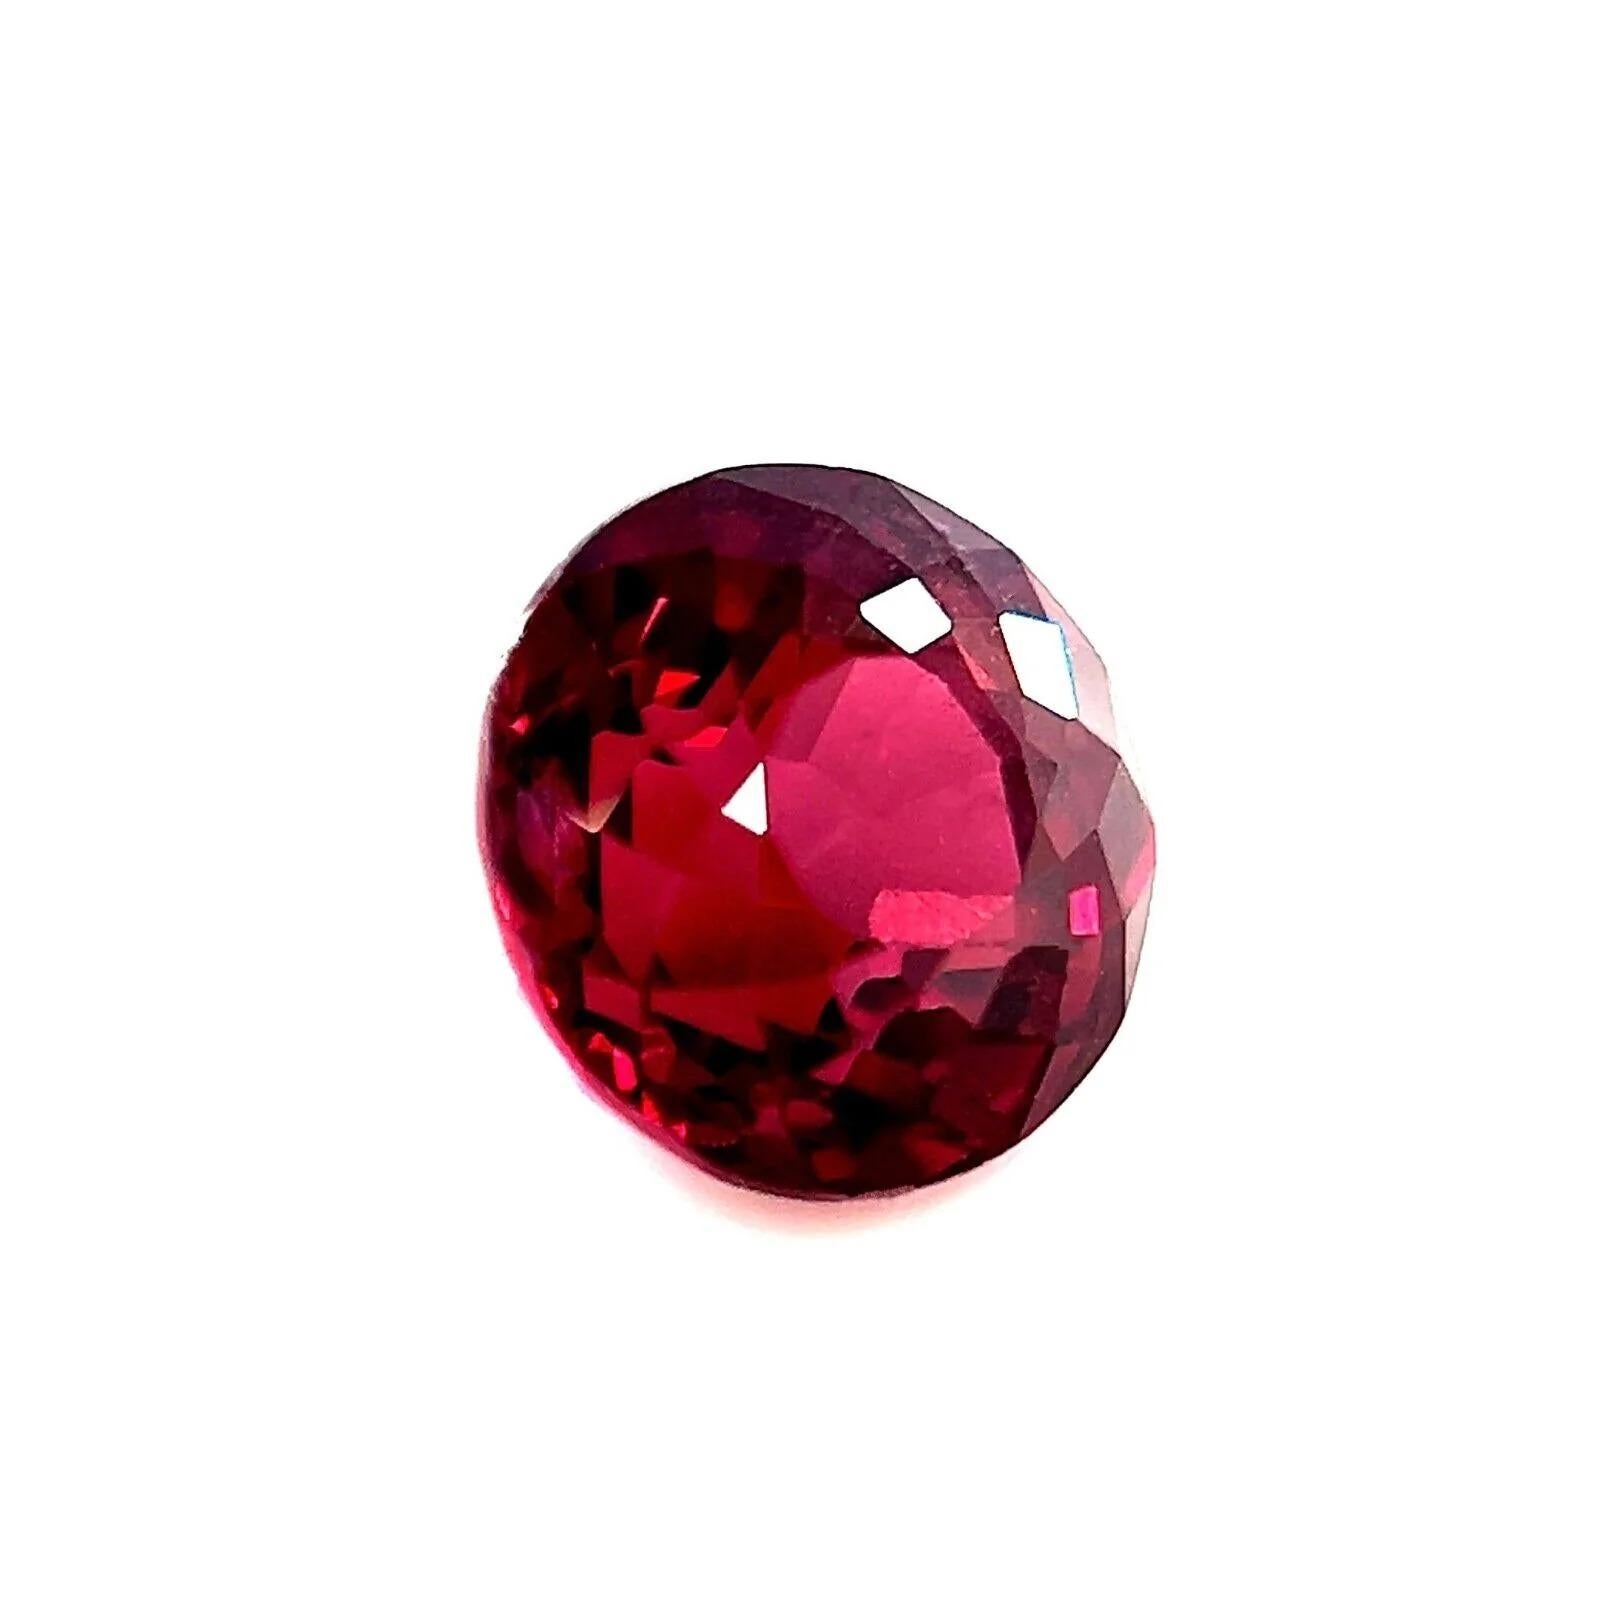 Fine 2.80ct Vivid Pink Purple Rhodolite Garnet Round Diamond Cut 7.5mm Loose Gem

Fine gemme naturelle de grenat rhodolite rose vif et violet. 
2.80 Carat avec une belle couleur rose pourpre vif et une excellente clarté, une pierre très propre. Il